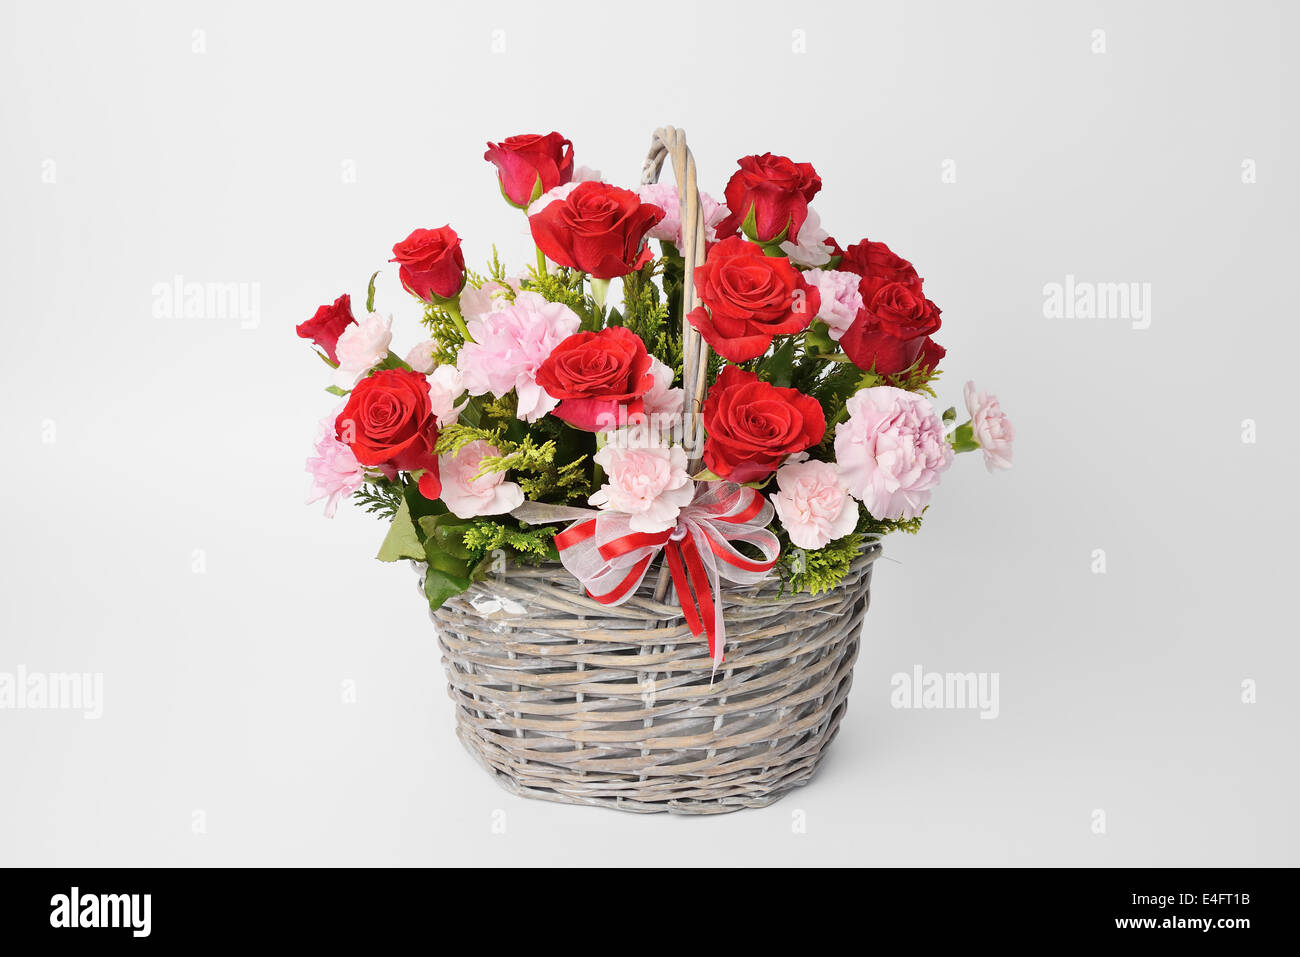 Red rose e garofani rosa in un cestello Foto Stock